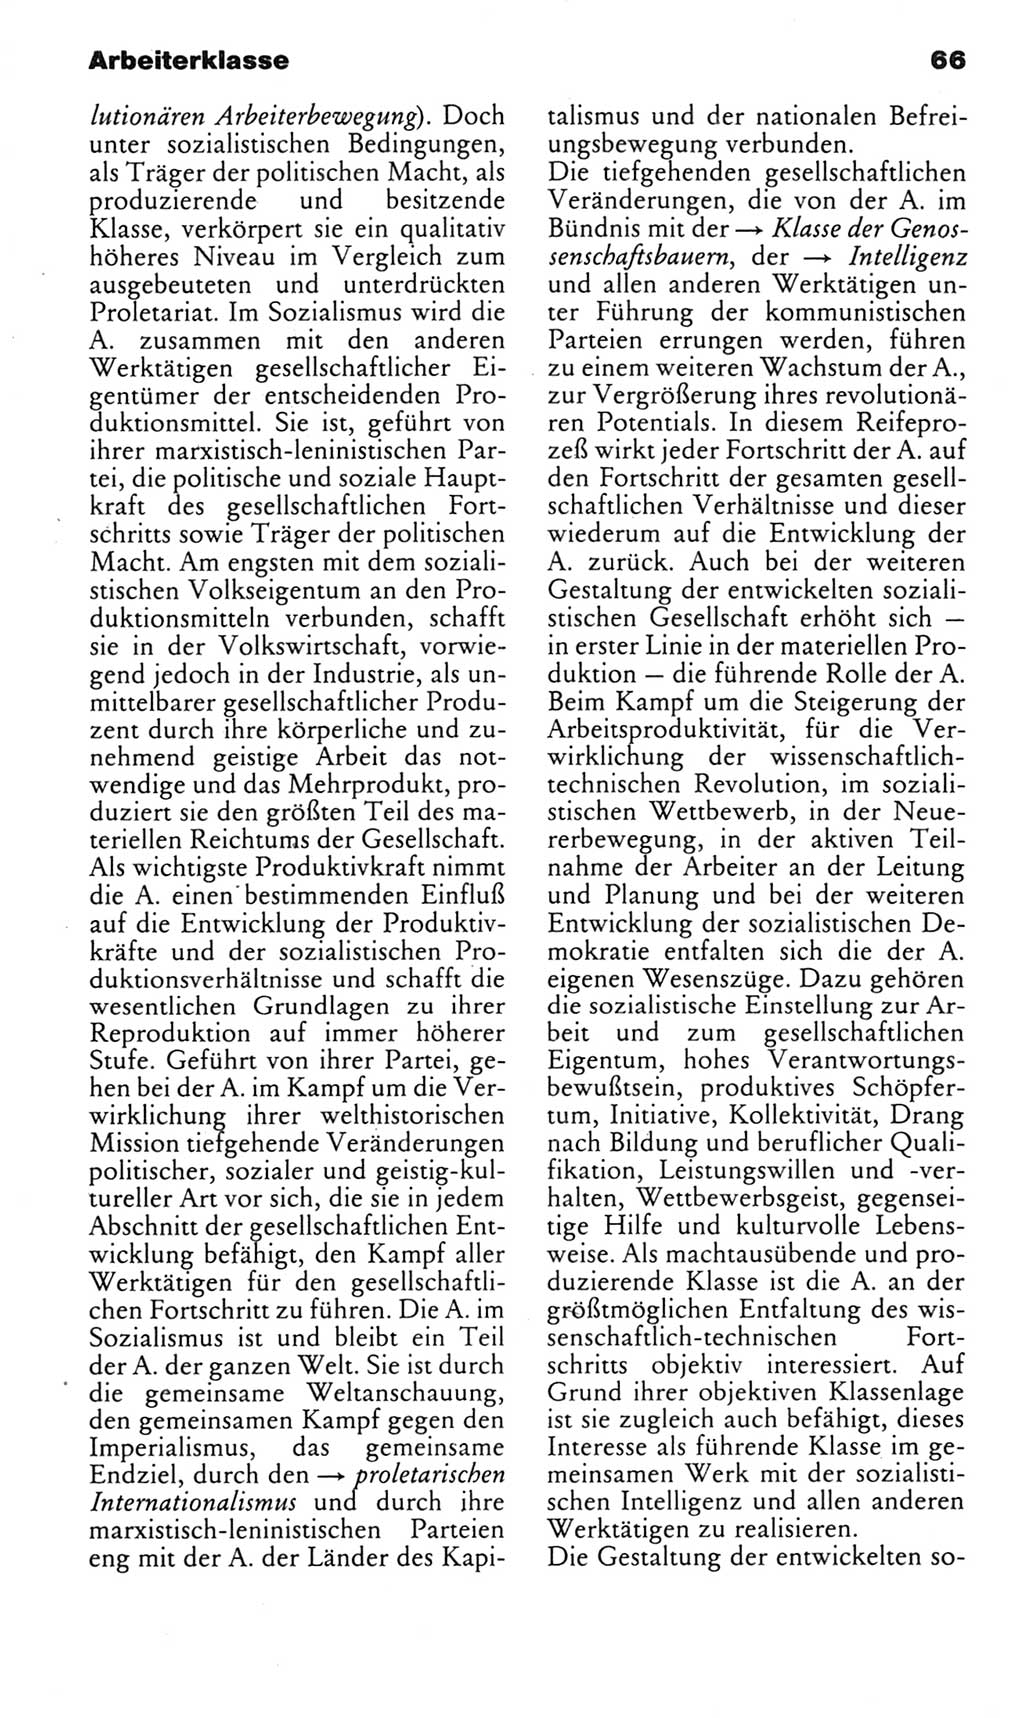 Kleines politisches Wörterbuch [Deutsche Demokratische Republik (DDR)] 1983, Seite 66 (Kl. pol. Wb. DDR 1983, S. 66)